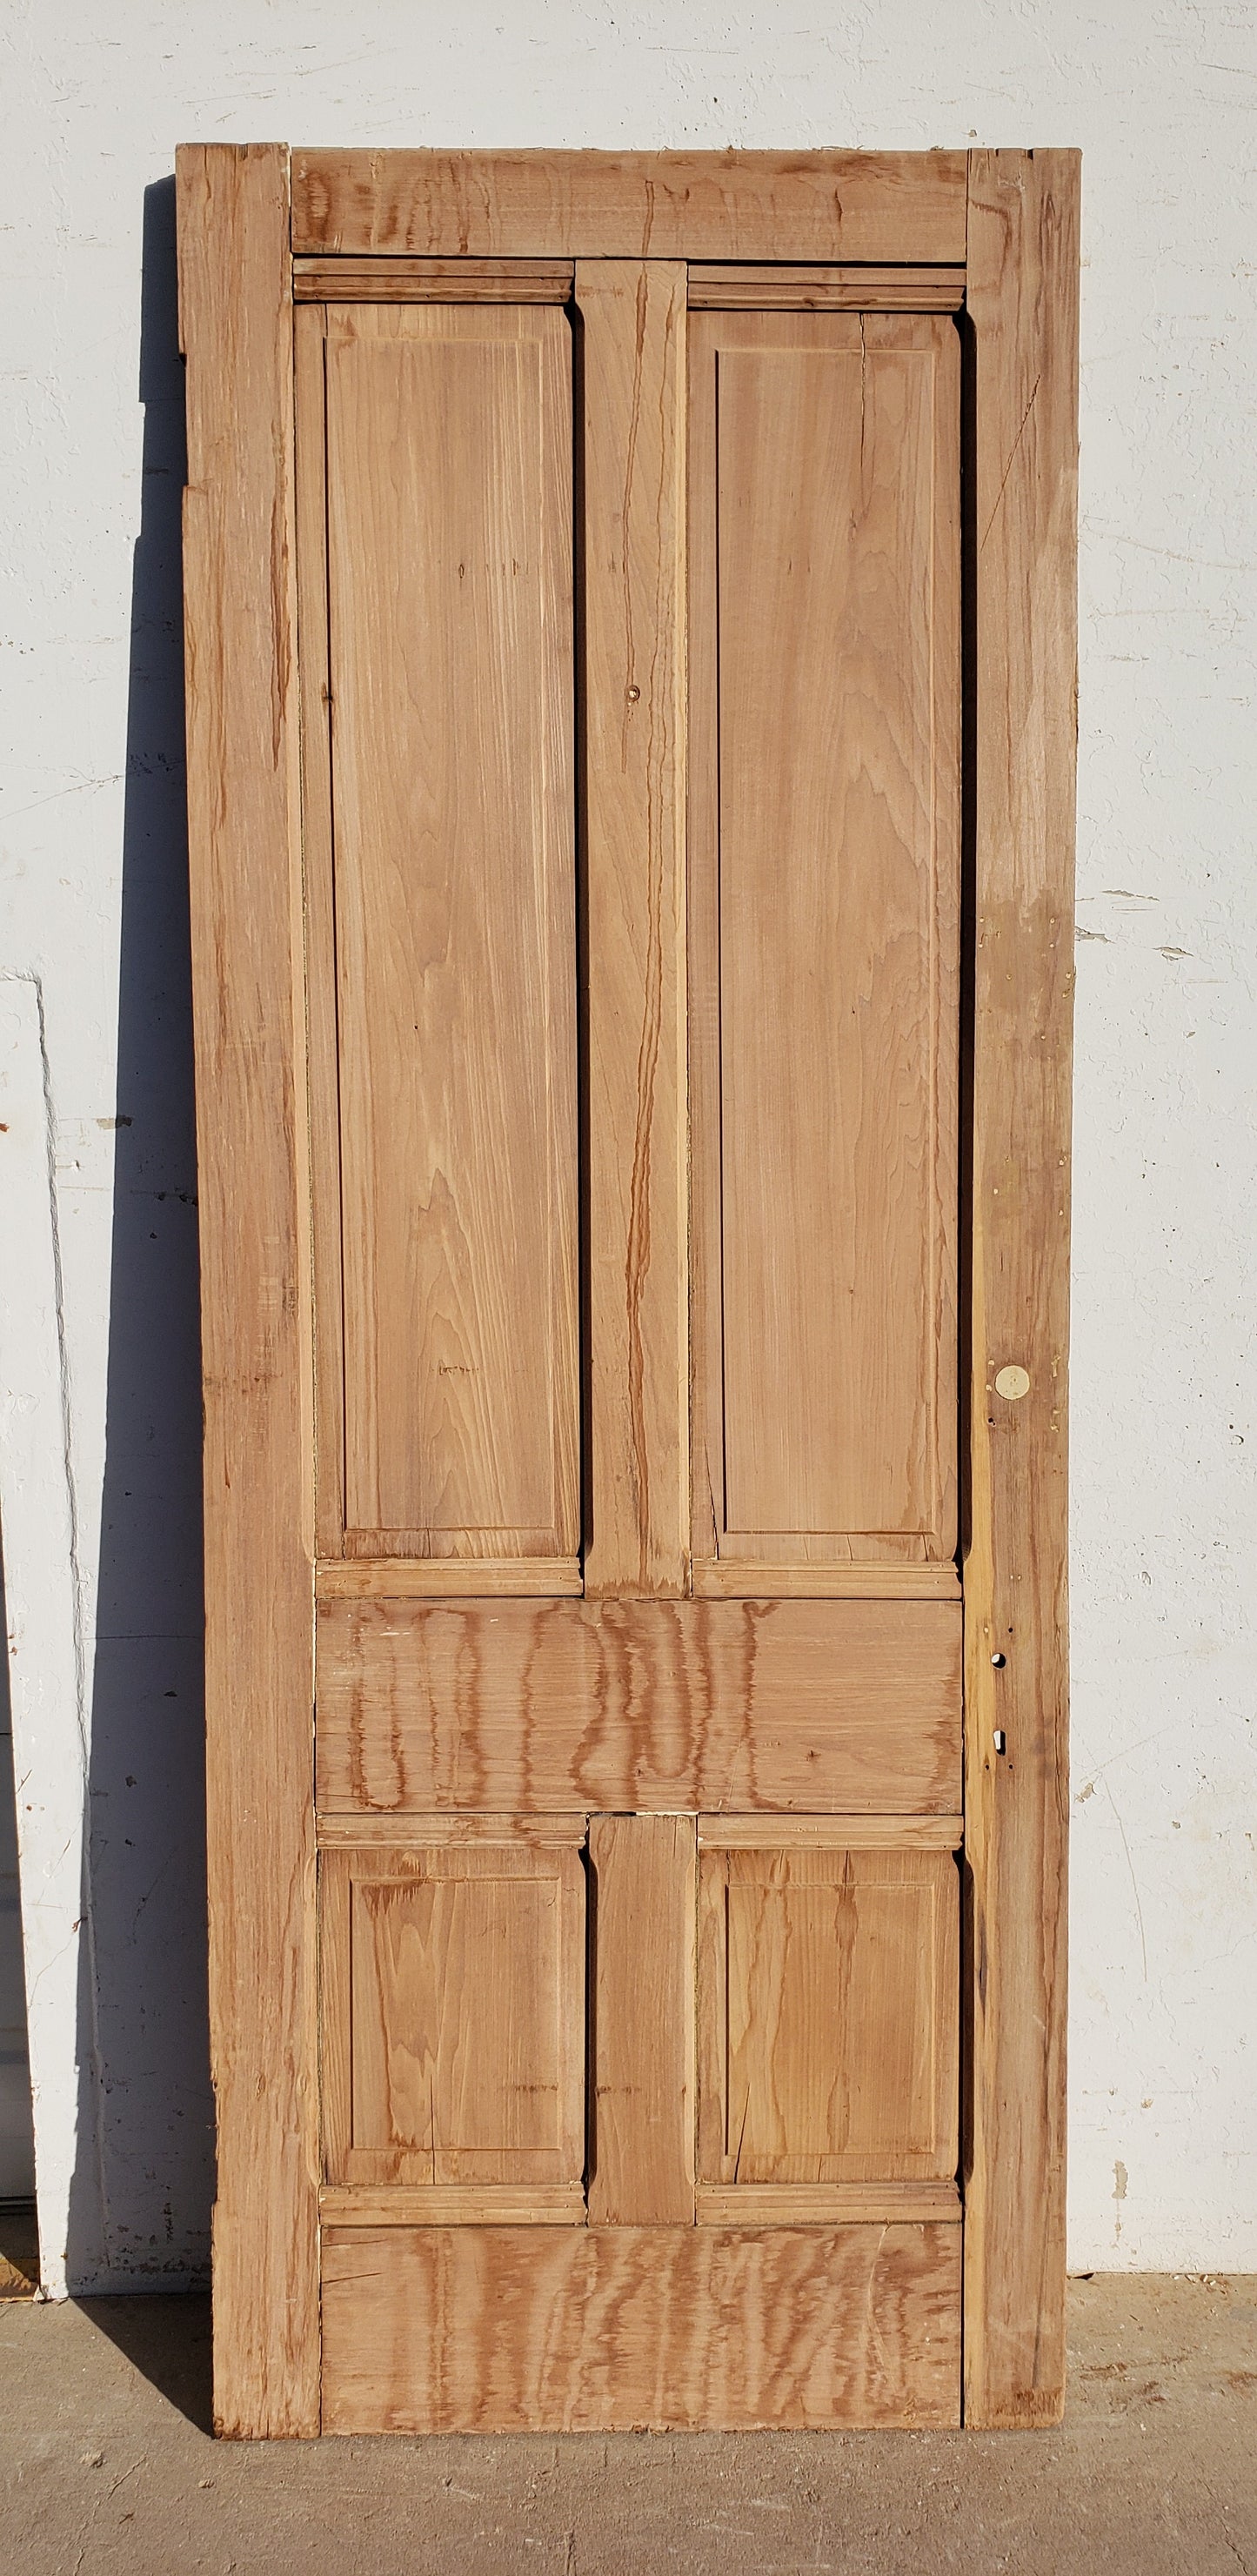 Antique 4 Panel Single Wood Door